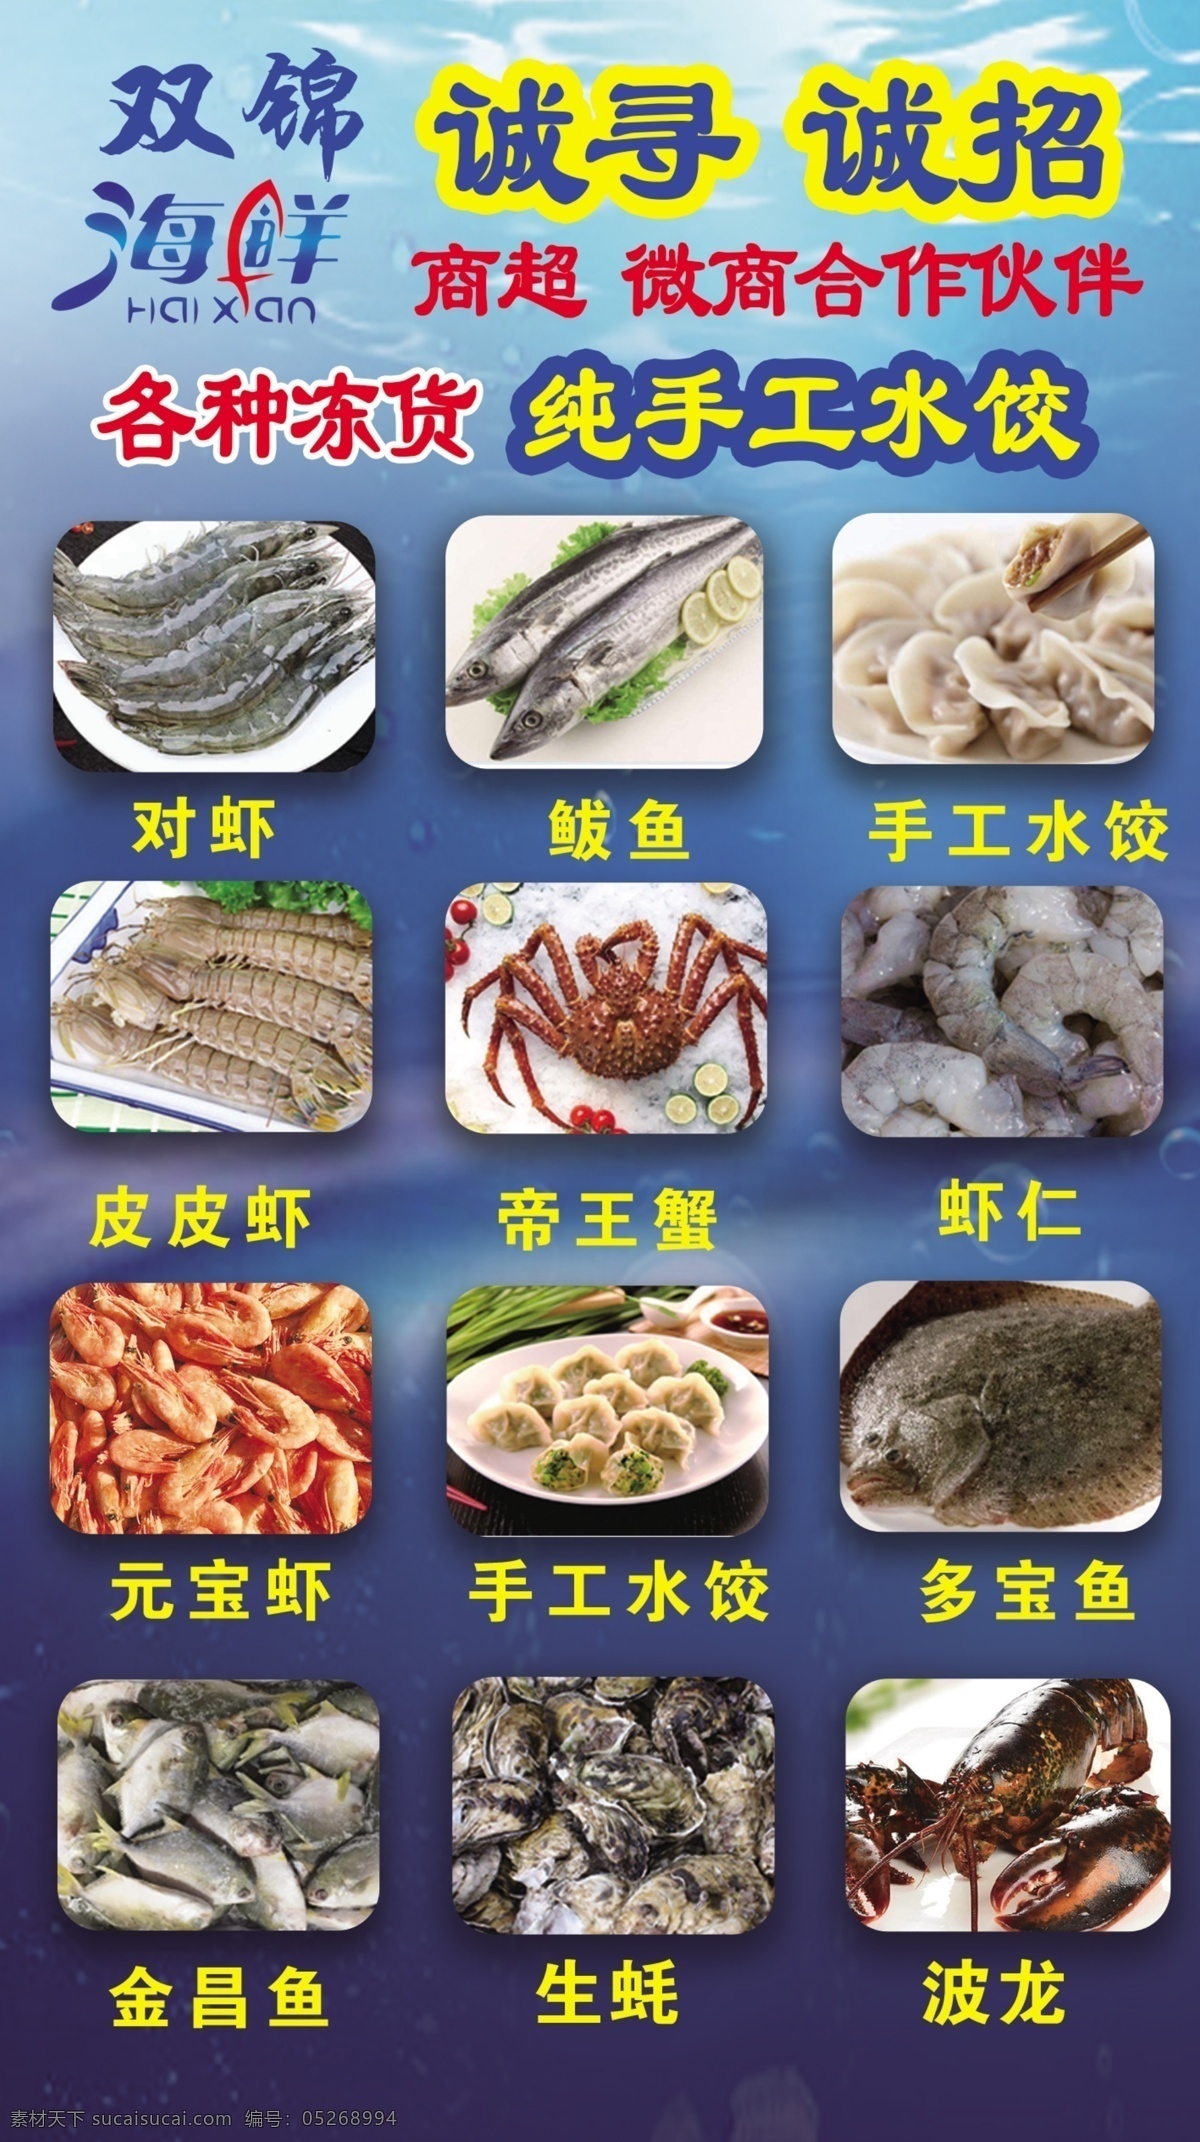 海鲜彩页 海鲜海报 海鲜 宣传单 对虾 螃蟹 鲍鱼